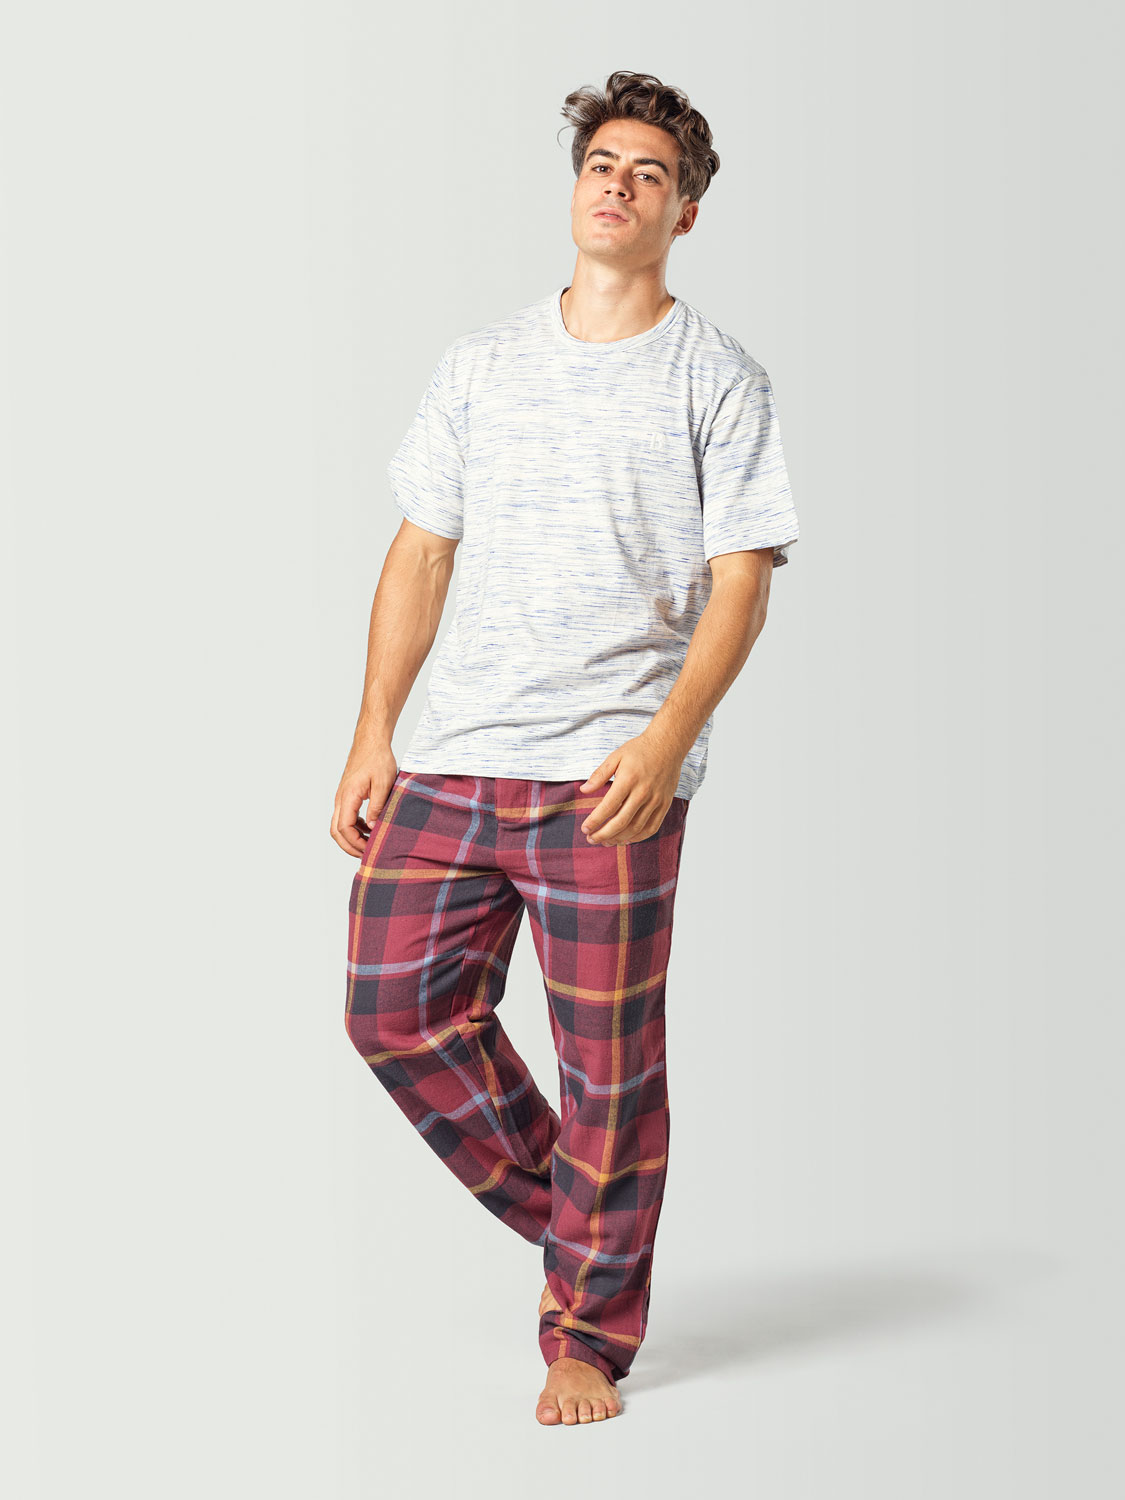 Pijama para hombre con camiseta de manga corta blanca y pantalón a cuadros rojo y negro